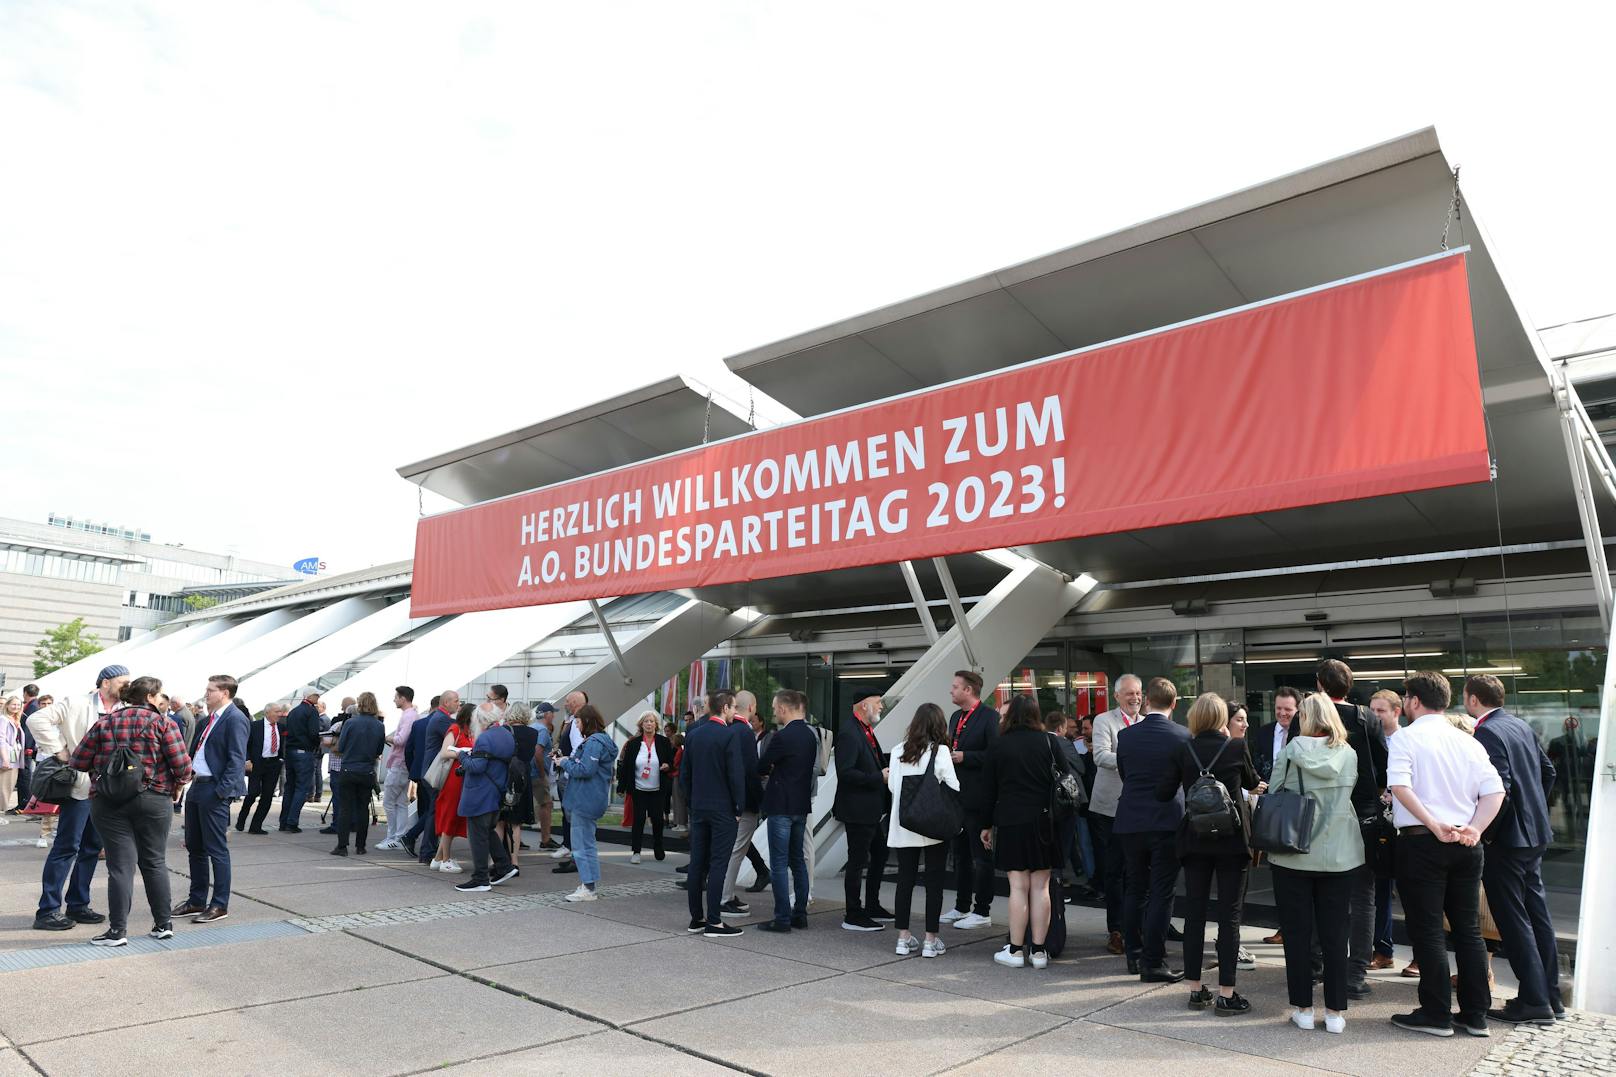 Am 2. Juni findet in Linz ein außerordentlicher Parteitag der SPÖ statt, bei dem der Nachfolger von Pamela Rendi-Wagner bestimmt wird. Es gibt zwei Kandidaten: